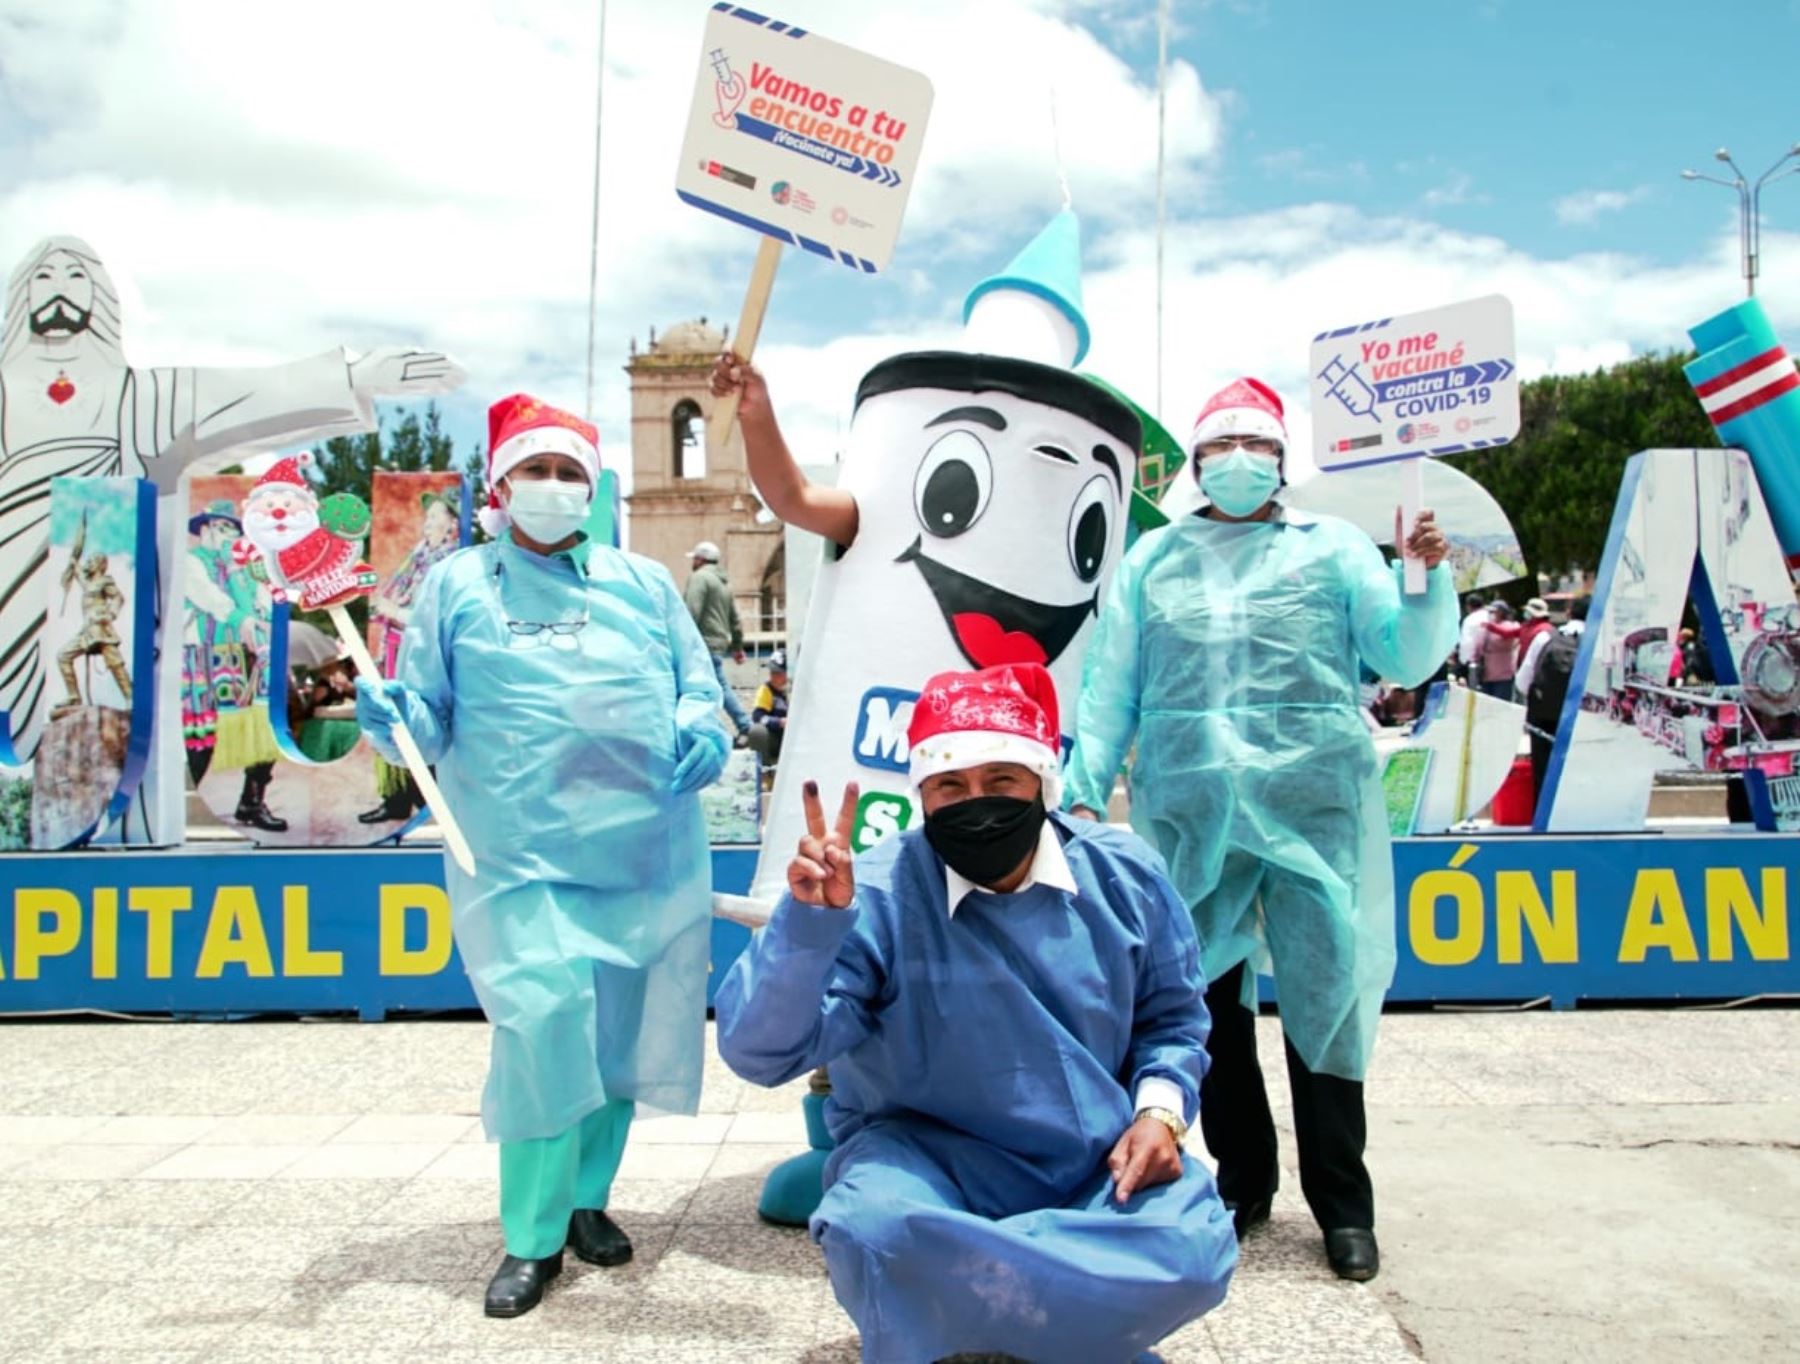 Ministerio de Salud lanza campaña "Vamos a tu encuentro Rikcharisun" en Puno para llegar a los que aún no han recibido la vacuna contra covid-19 en dicha región. ANDINA/Difusión